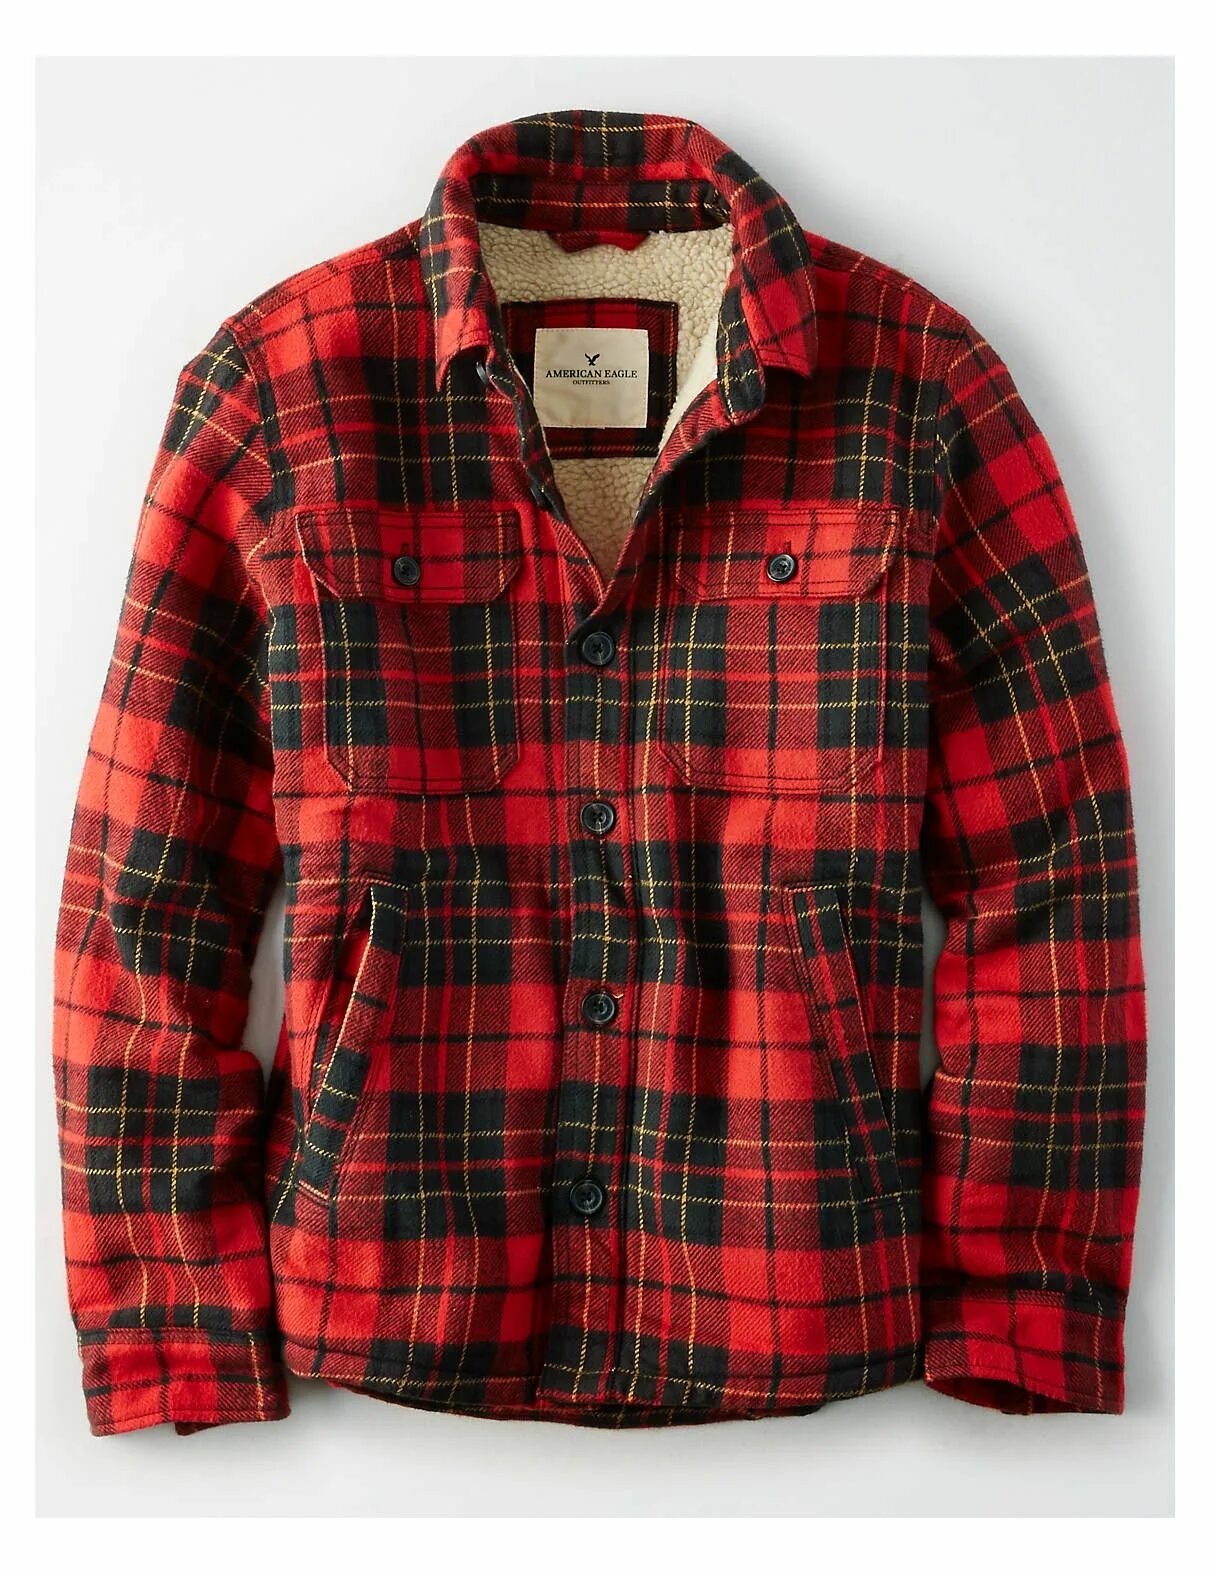 Теплая рубашка в клетку купить. Рубашка Американ игл. Фланелевая рубашка Lee Cooper Original. Рубашка Lee Cooper красная клетчатая. Мужская утепленная рубашка Flannel Shirt Jacket.